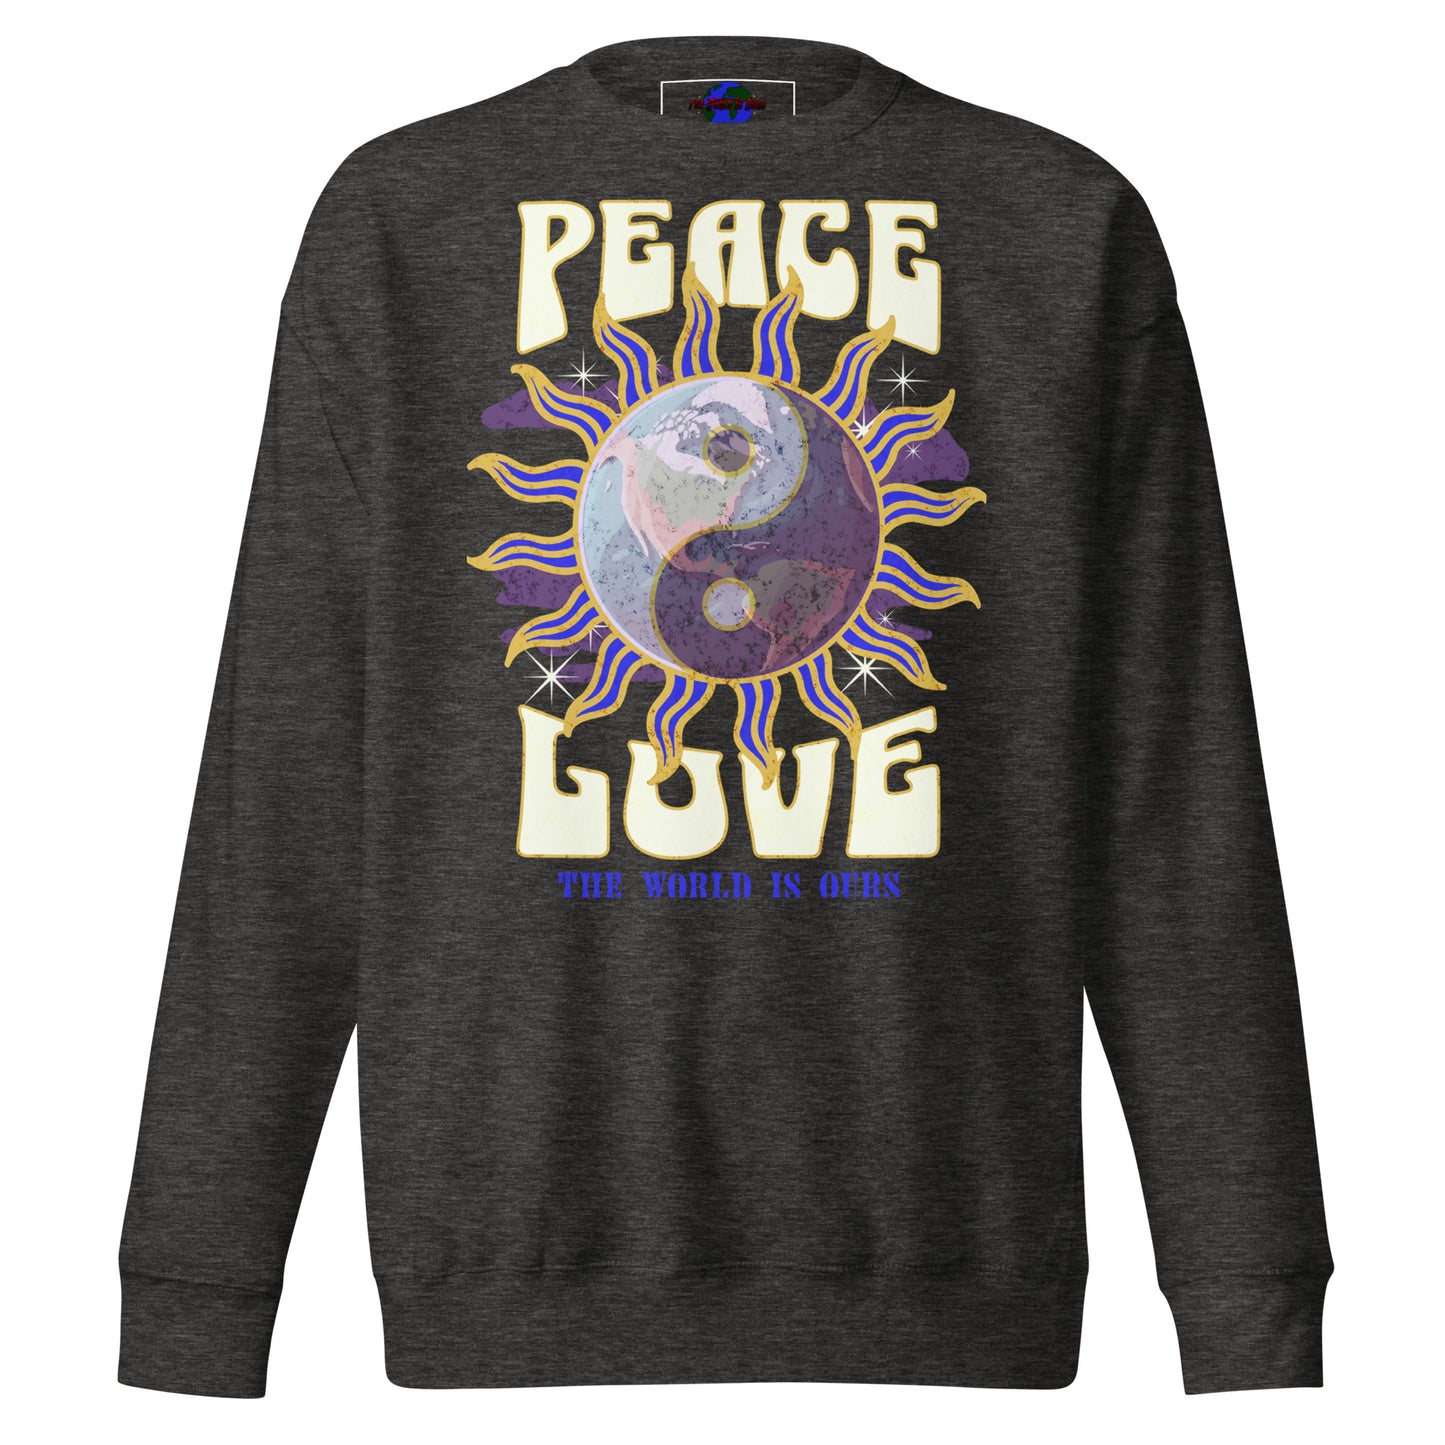 TWIO Peace Unisex Premium Sweatshirt